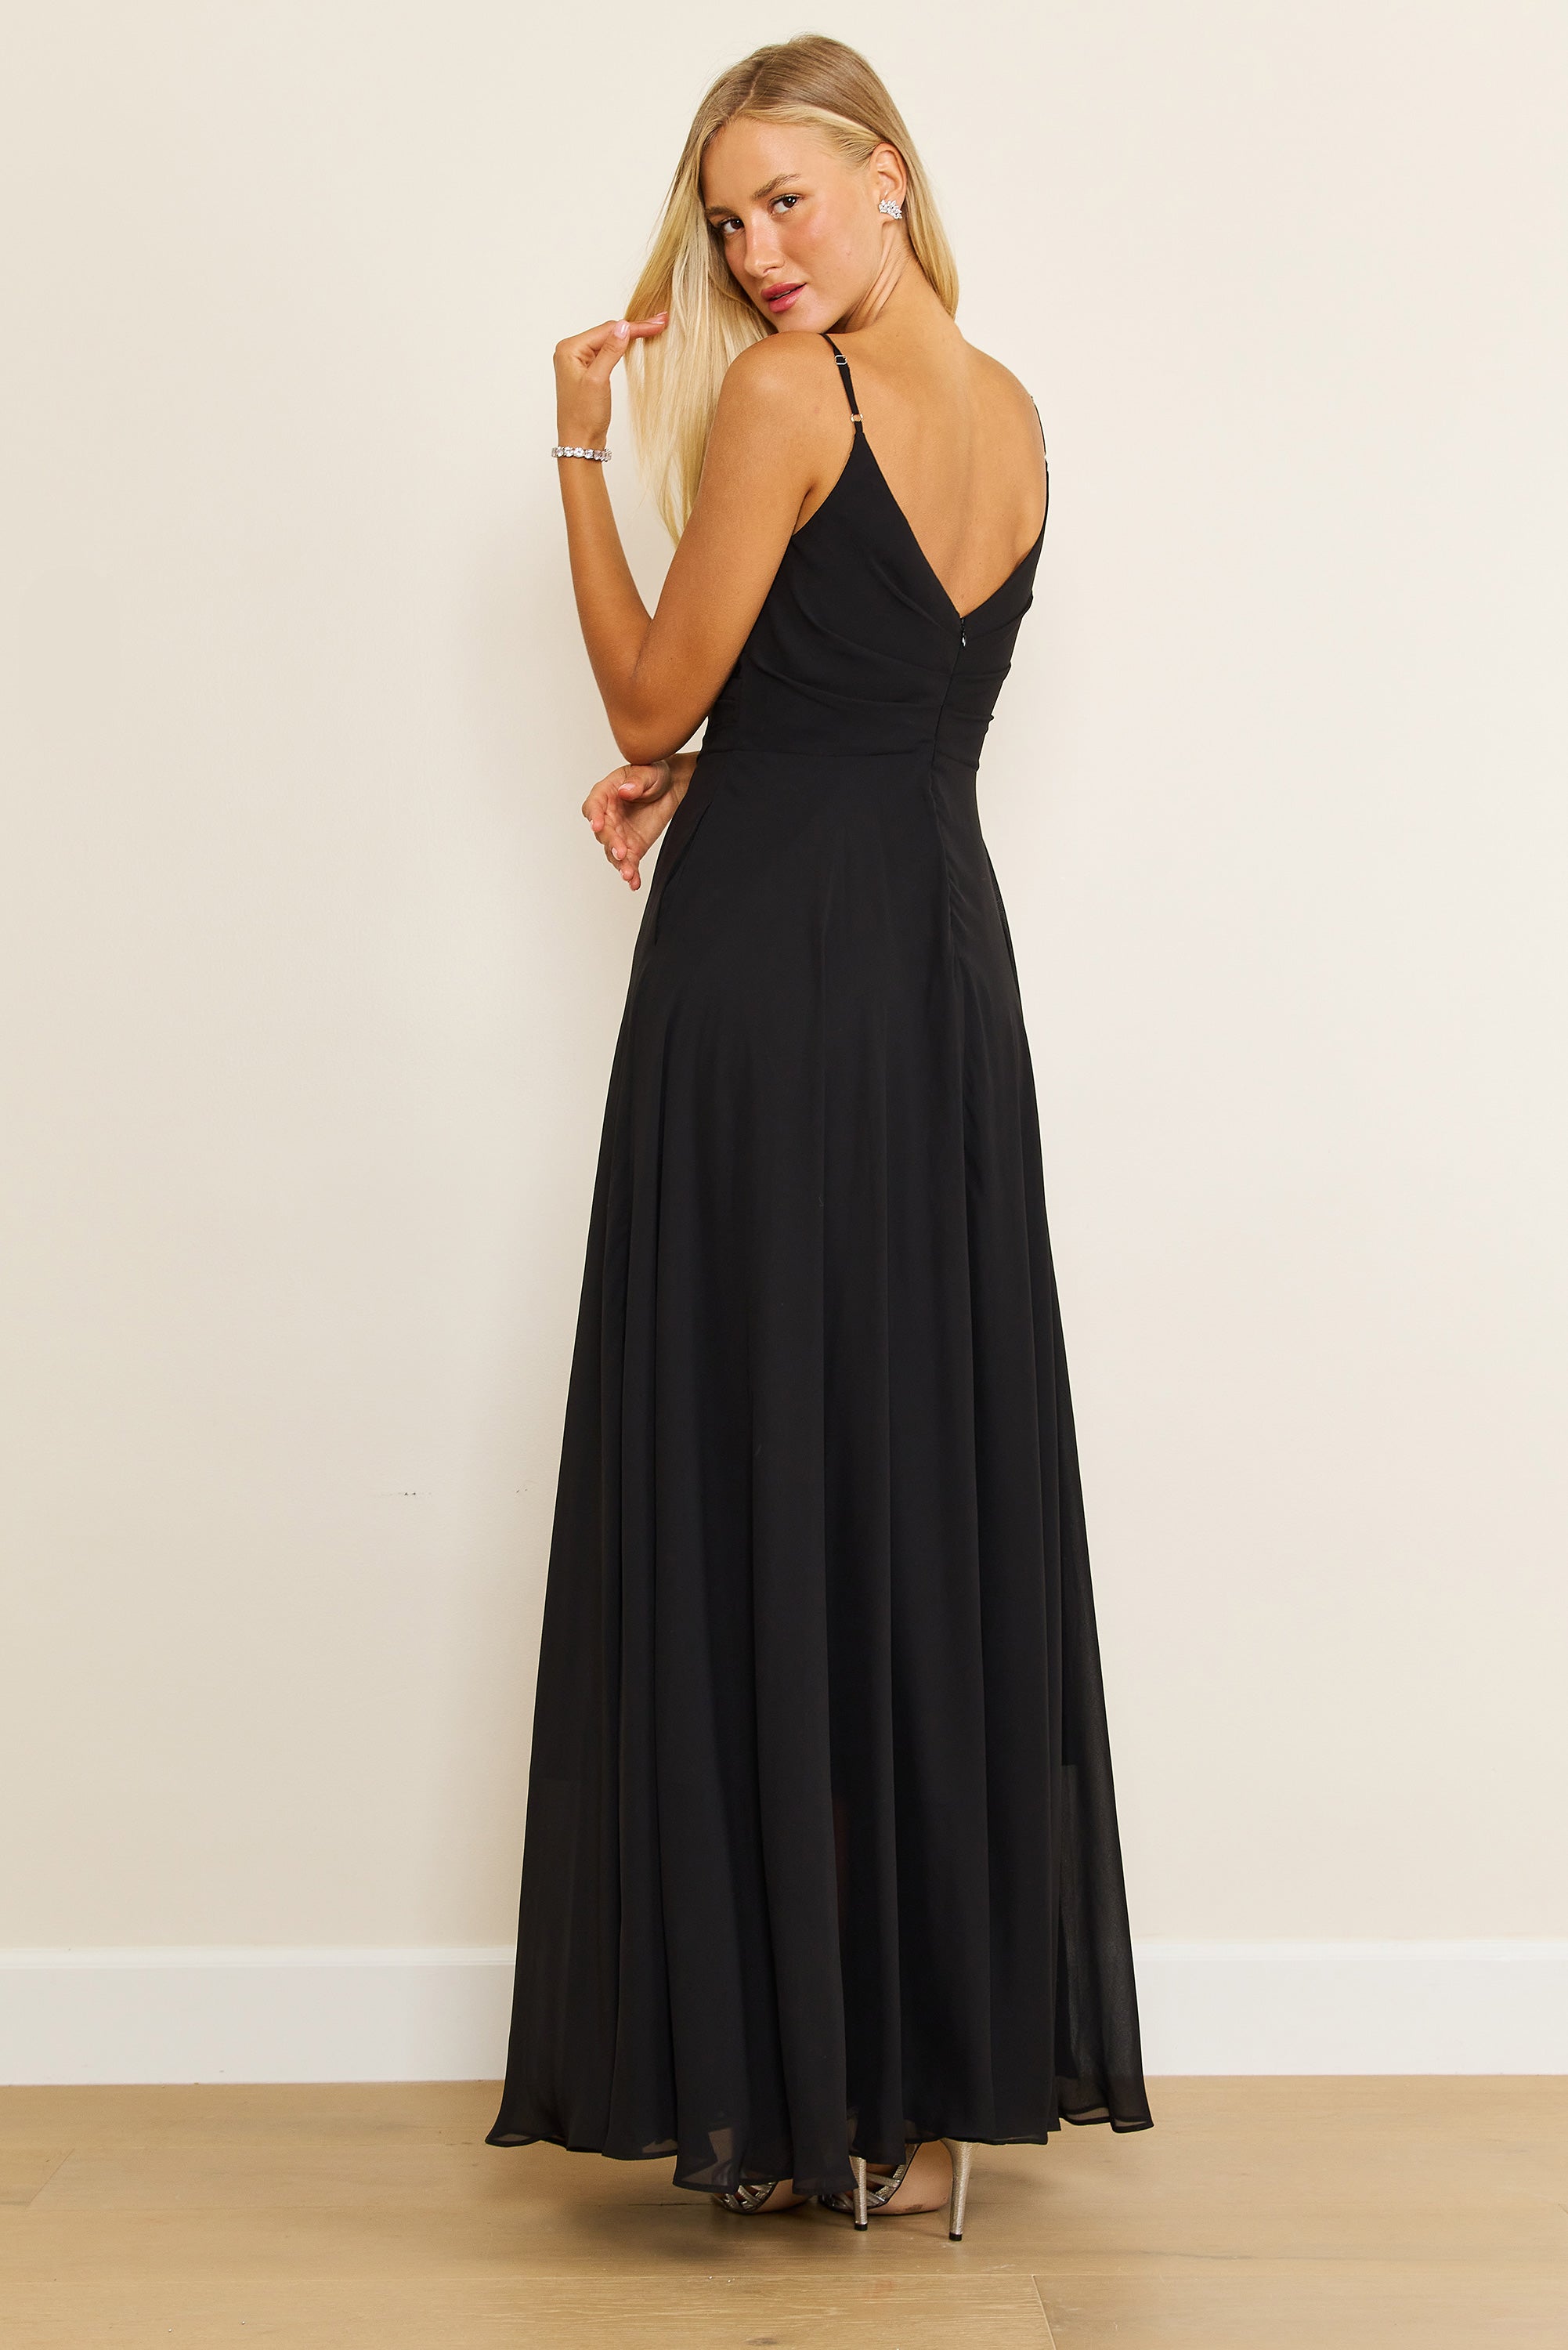 Formal Dresses Long Black Formal Party Dress